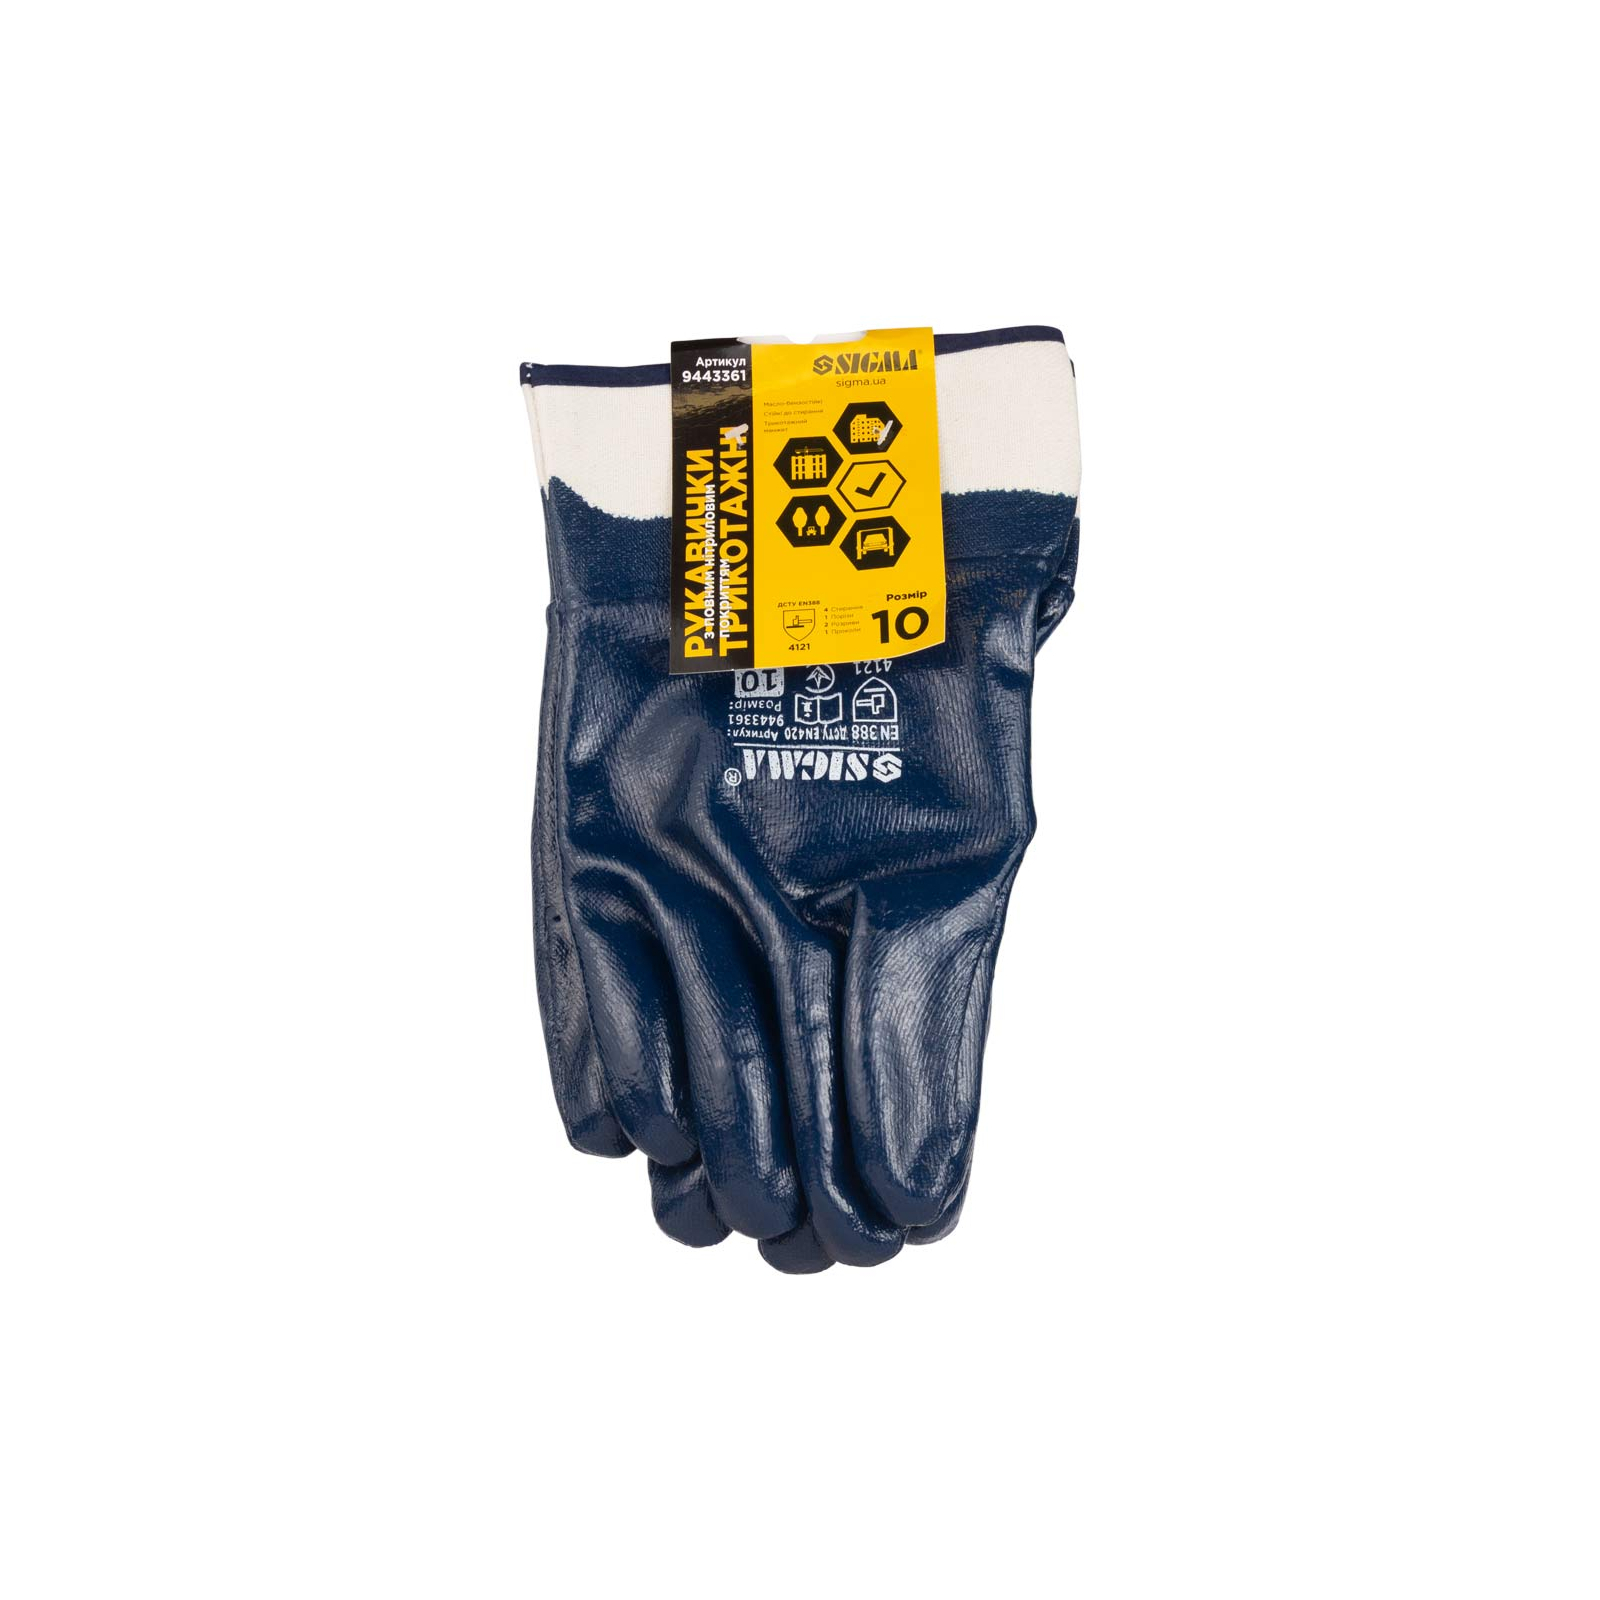 Защитные перчатки Sigma трикотажные c нитриловым покрытием (синие краги) (9443361) изображение 4